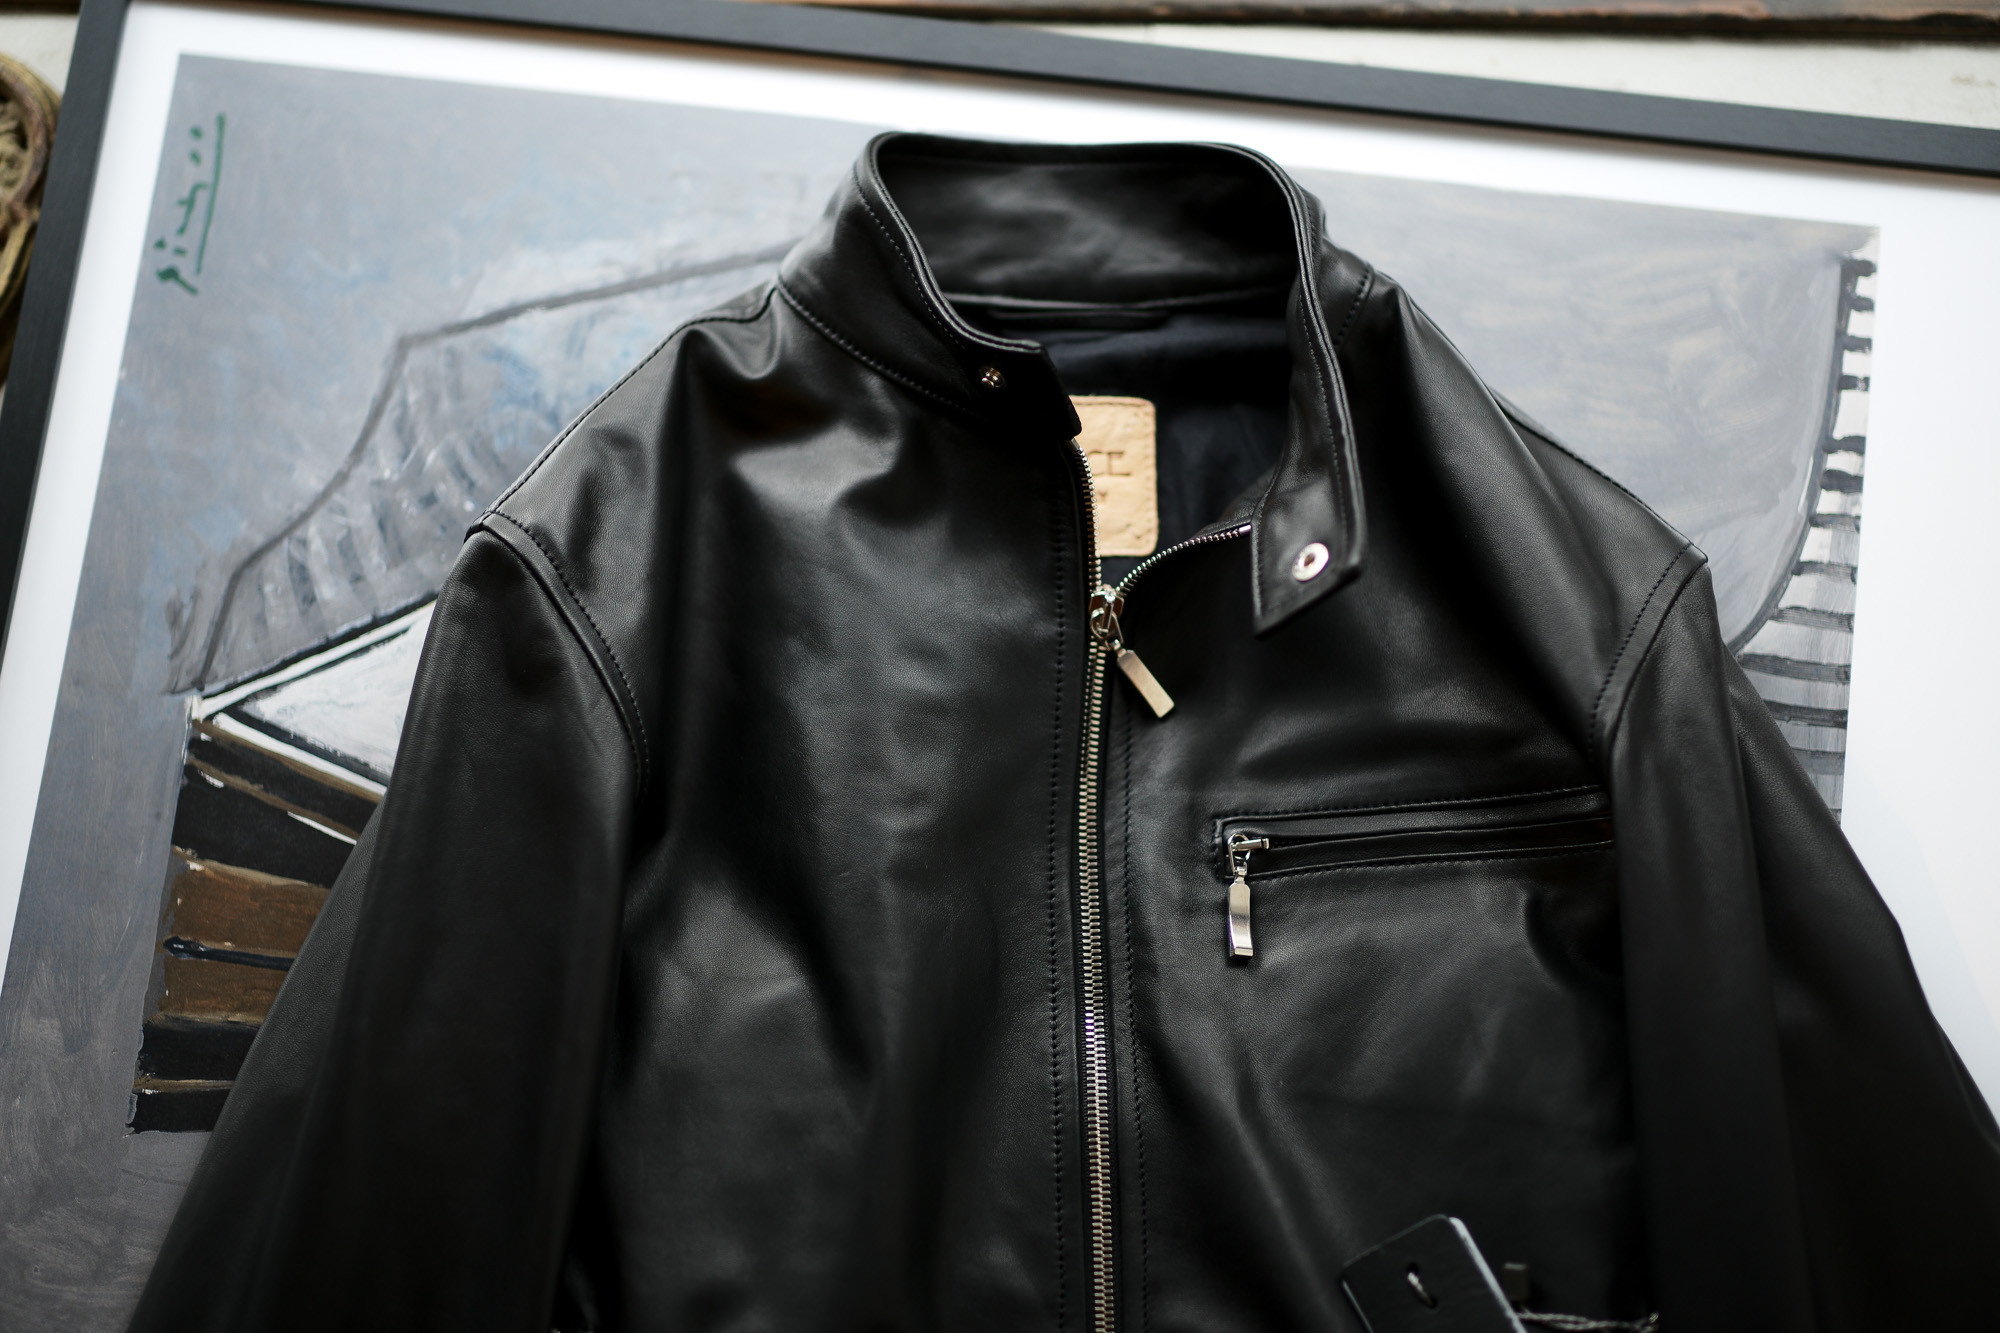 SILENCE(サイレンス) Single Leather Jacket (シングルレザー ジャケット) Lambskin Nappa Leather (ラムナッパ レザー) シングル ライダース ジャケット NERO (ブラック) Made in italy (イタリア製) 2020 春夏新作 【入荷しました】【フリー分発売開始】 愛知 名古屋 altoediritto アルトエデリット レザージャケット